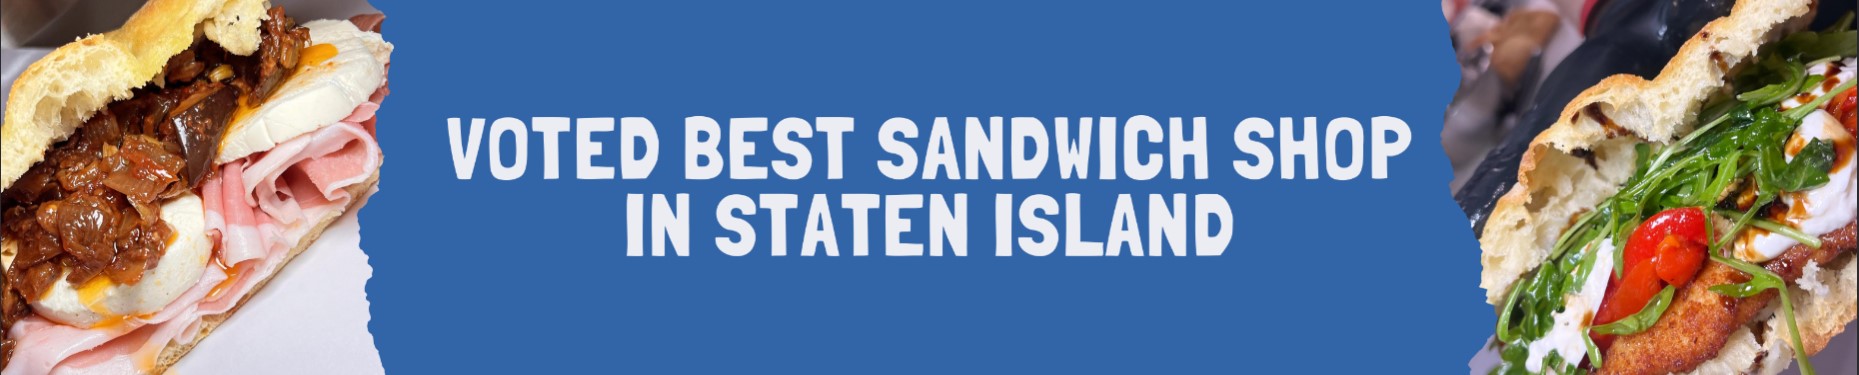 Best Voted Sandwich in Staten Island